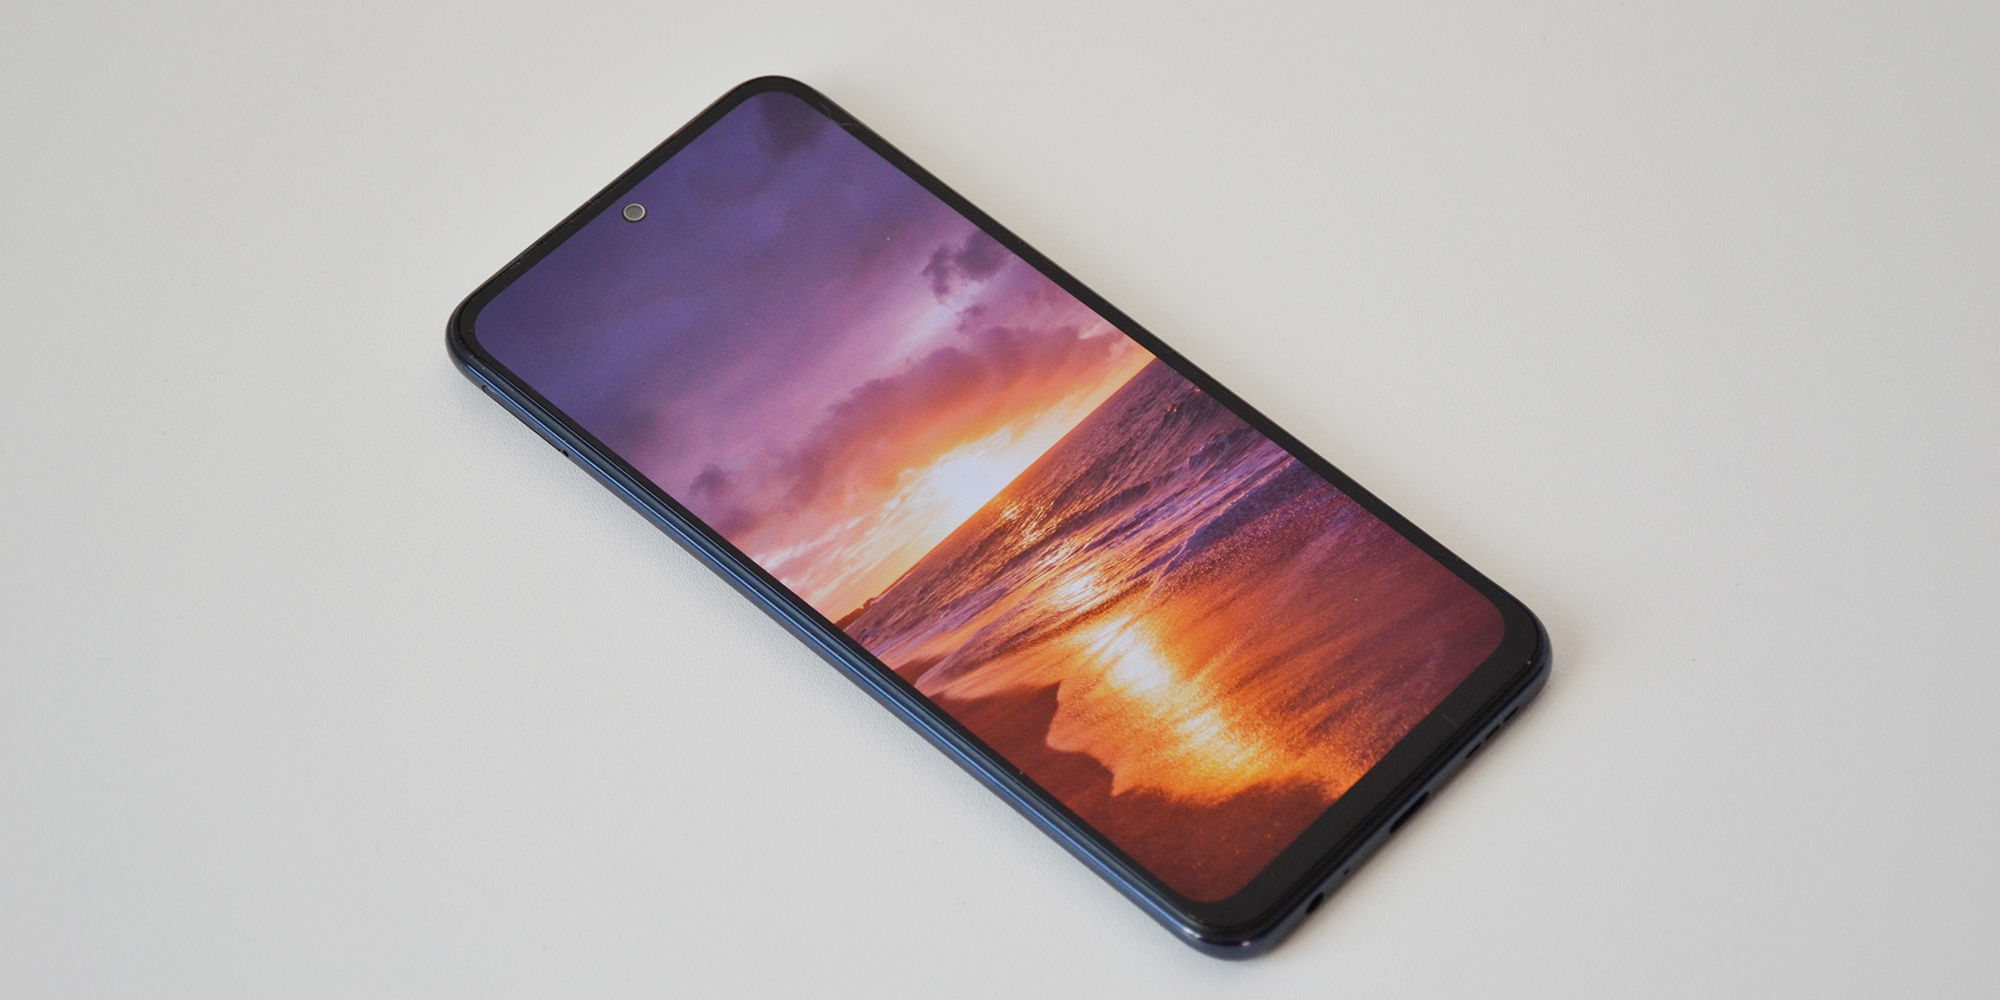 Xiaomi Redmi Note 10